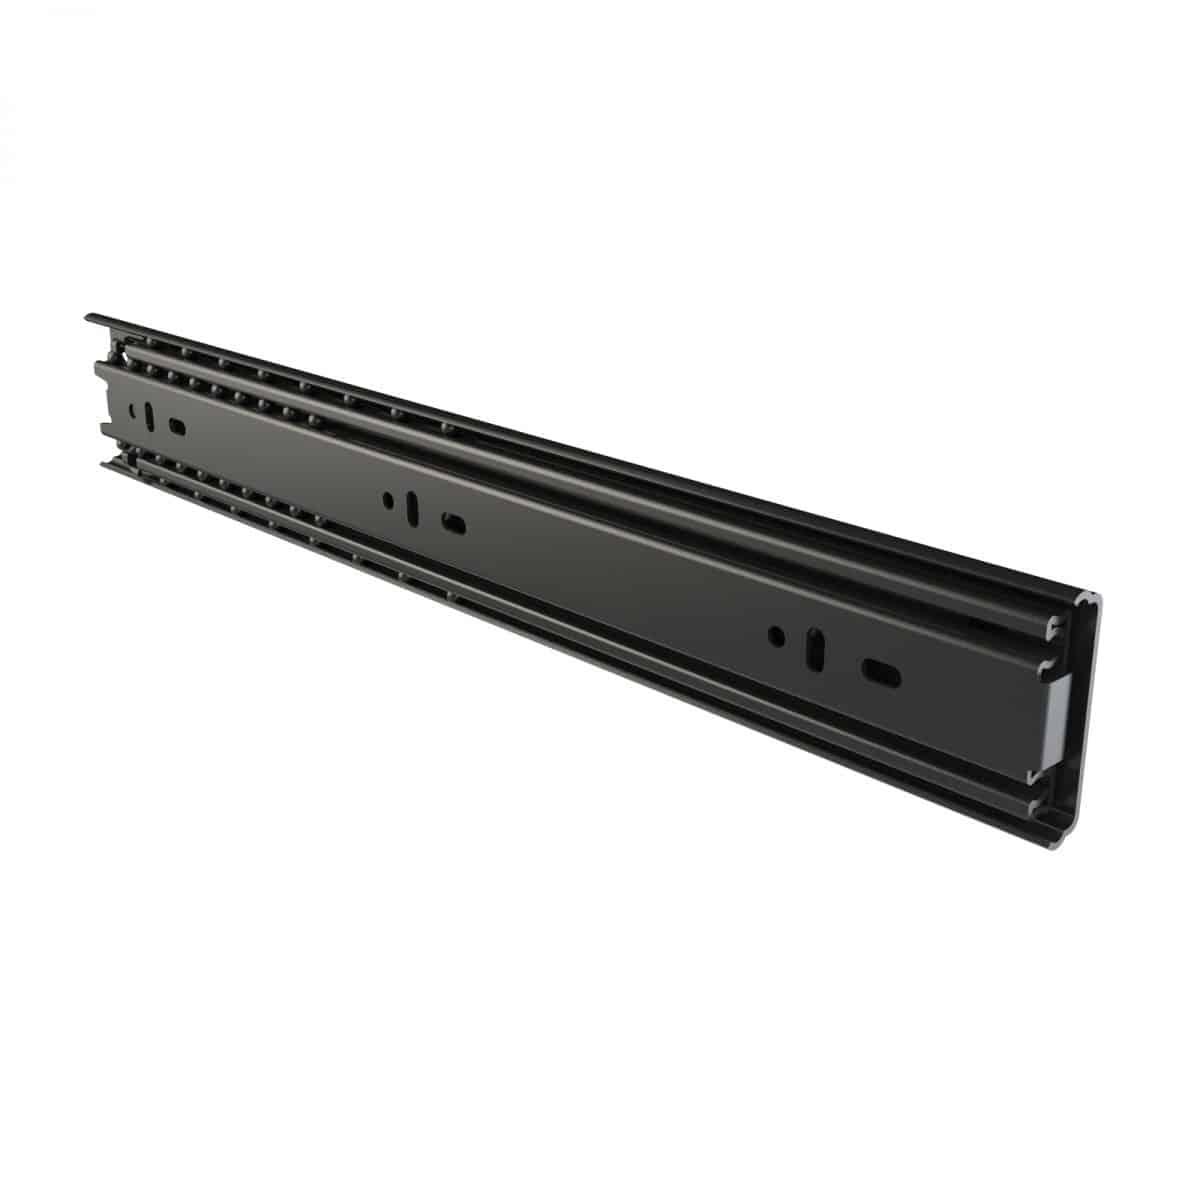 ARMOR R50-350 45kg Soft Close Drawer Slides